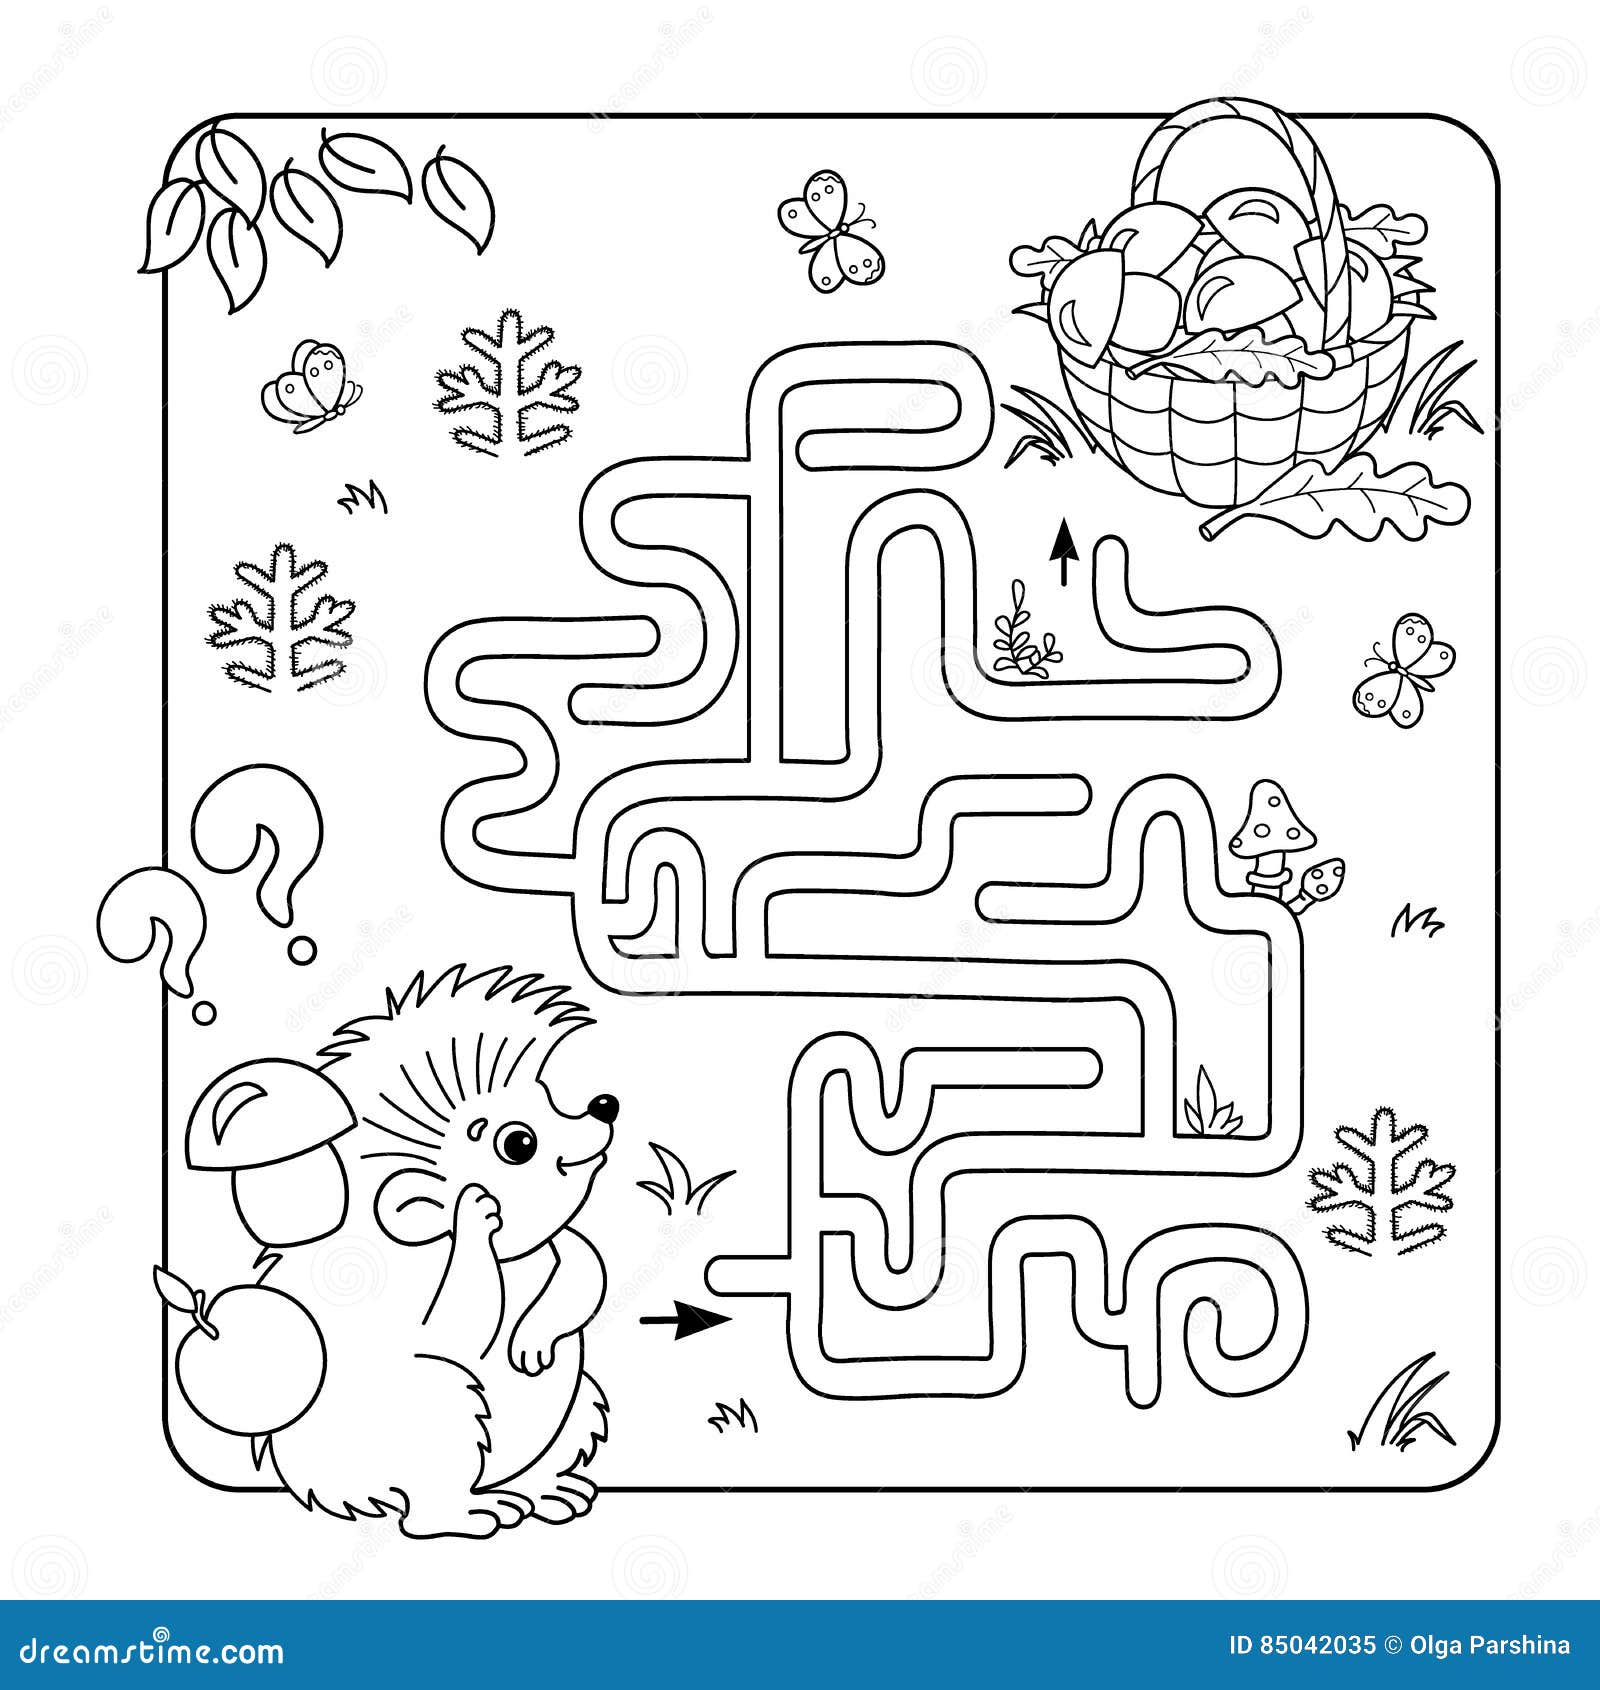 Jogo Do Labirinto Ou Do Labirinto Para Crianças Prées-escolar Enigma Esboço  Da Página Da Coloração Ilustração do Vetor - Ilustração de escolha,  alimento: 85038249